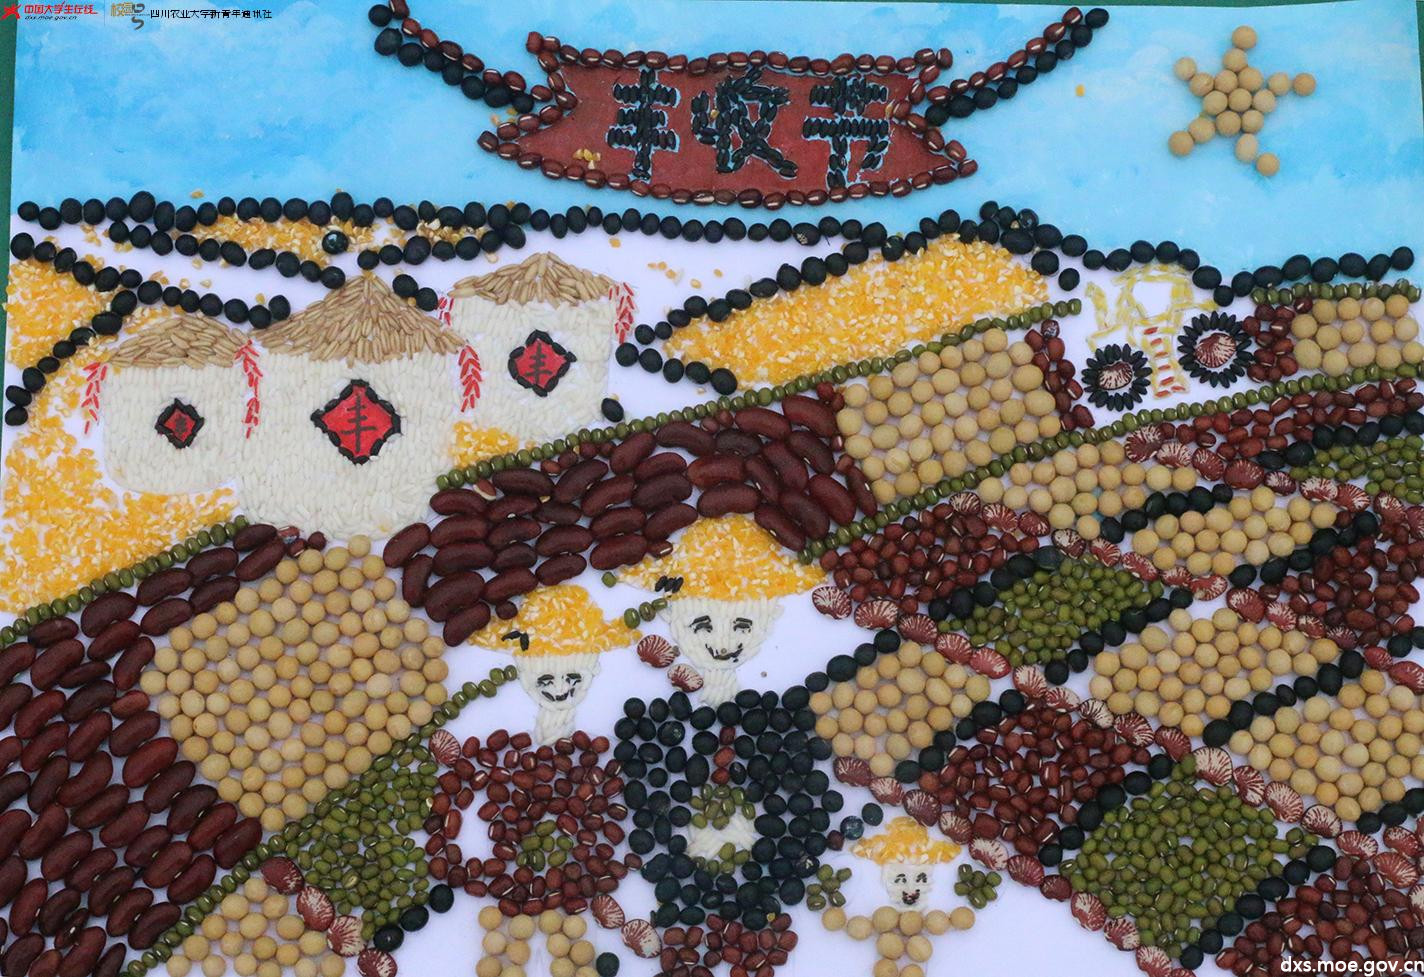 四川大学生用种子作画,尽展想象力和创造力